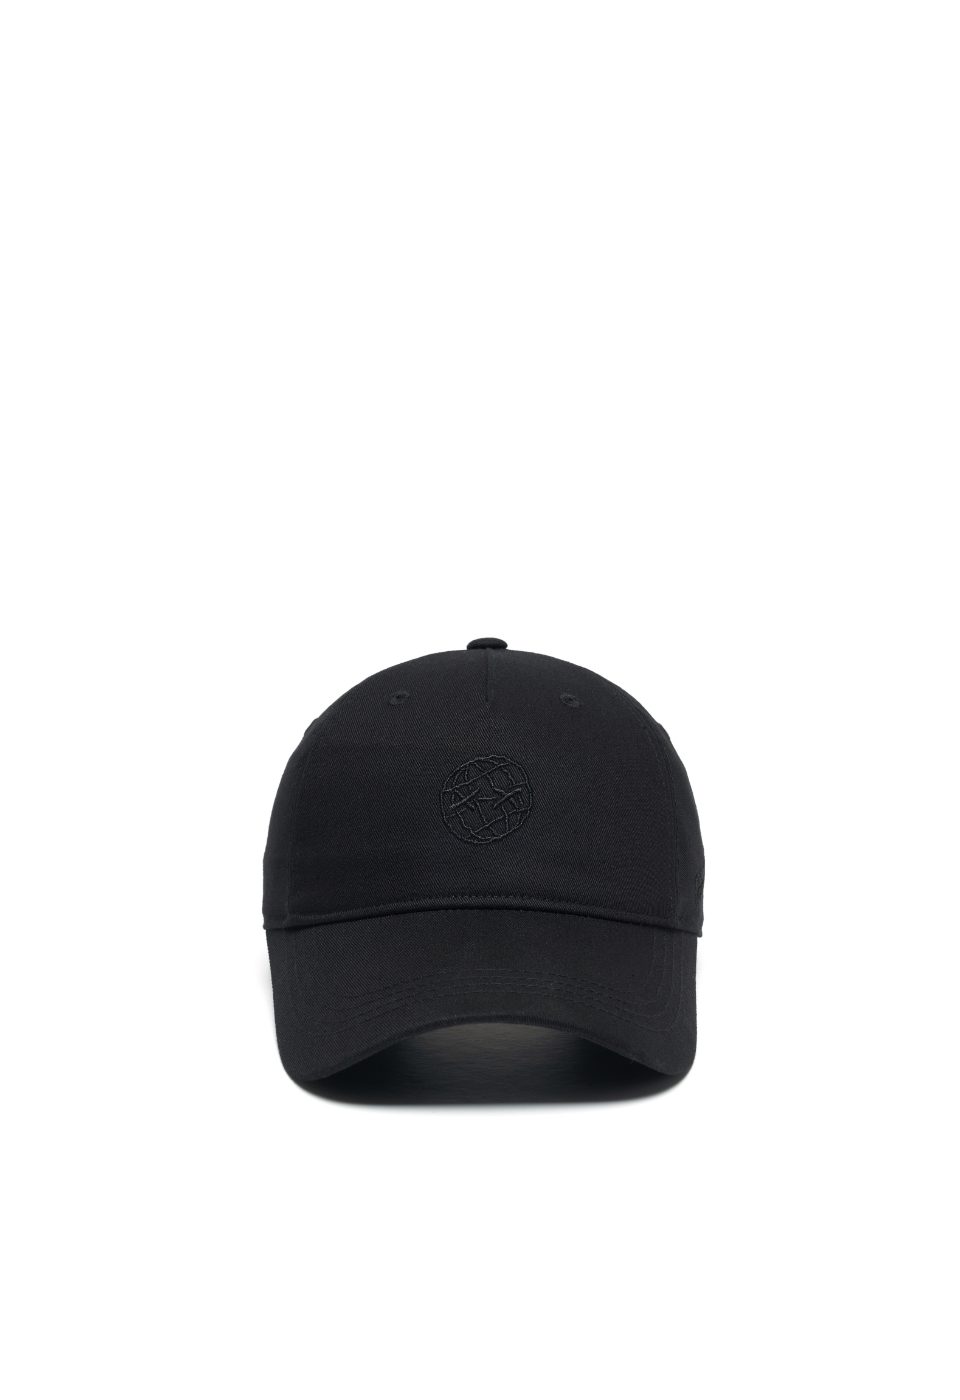 FIX-XIR LOGO CAP(BLACK)